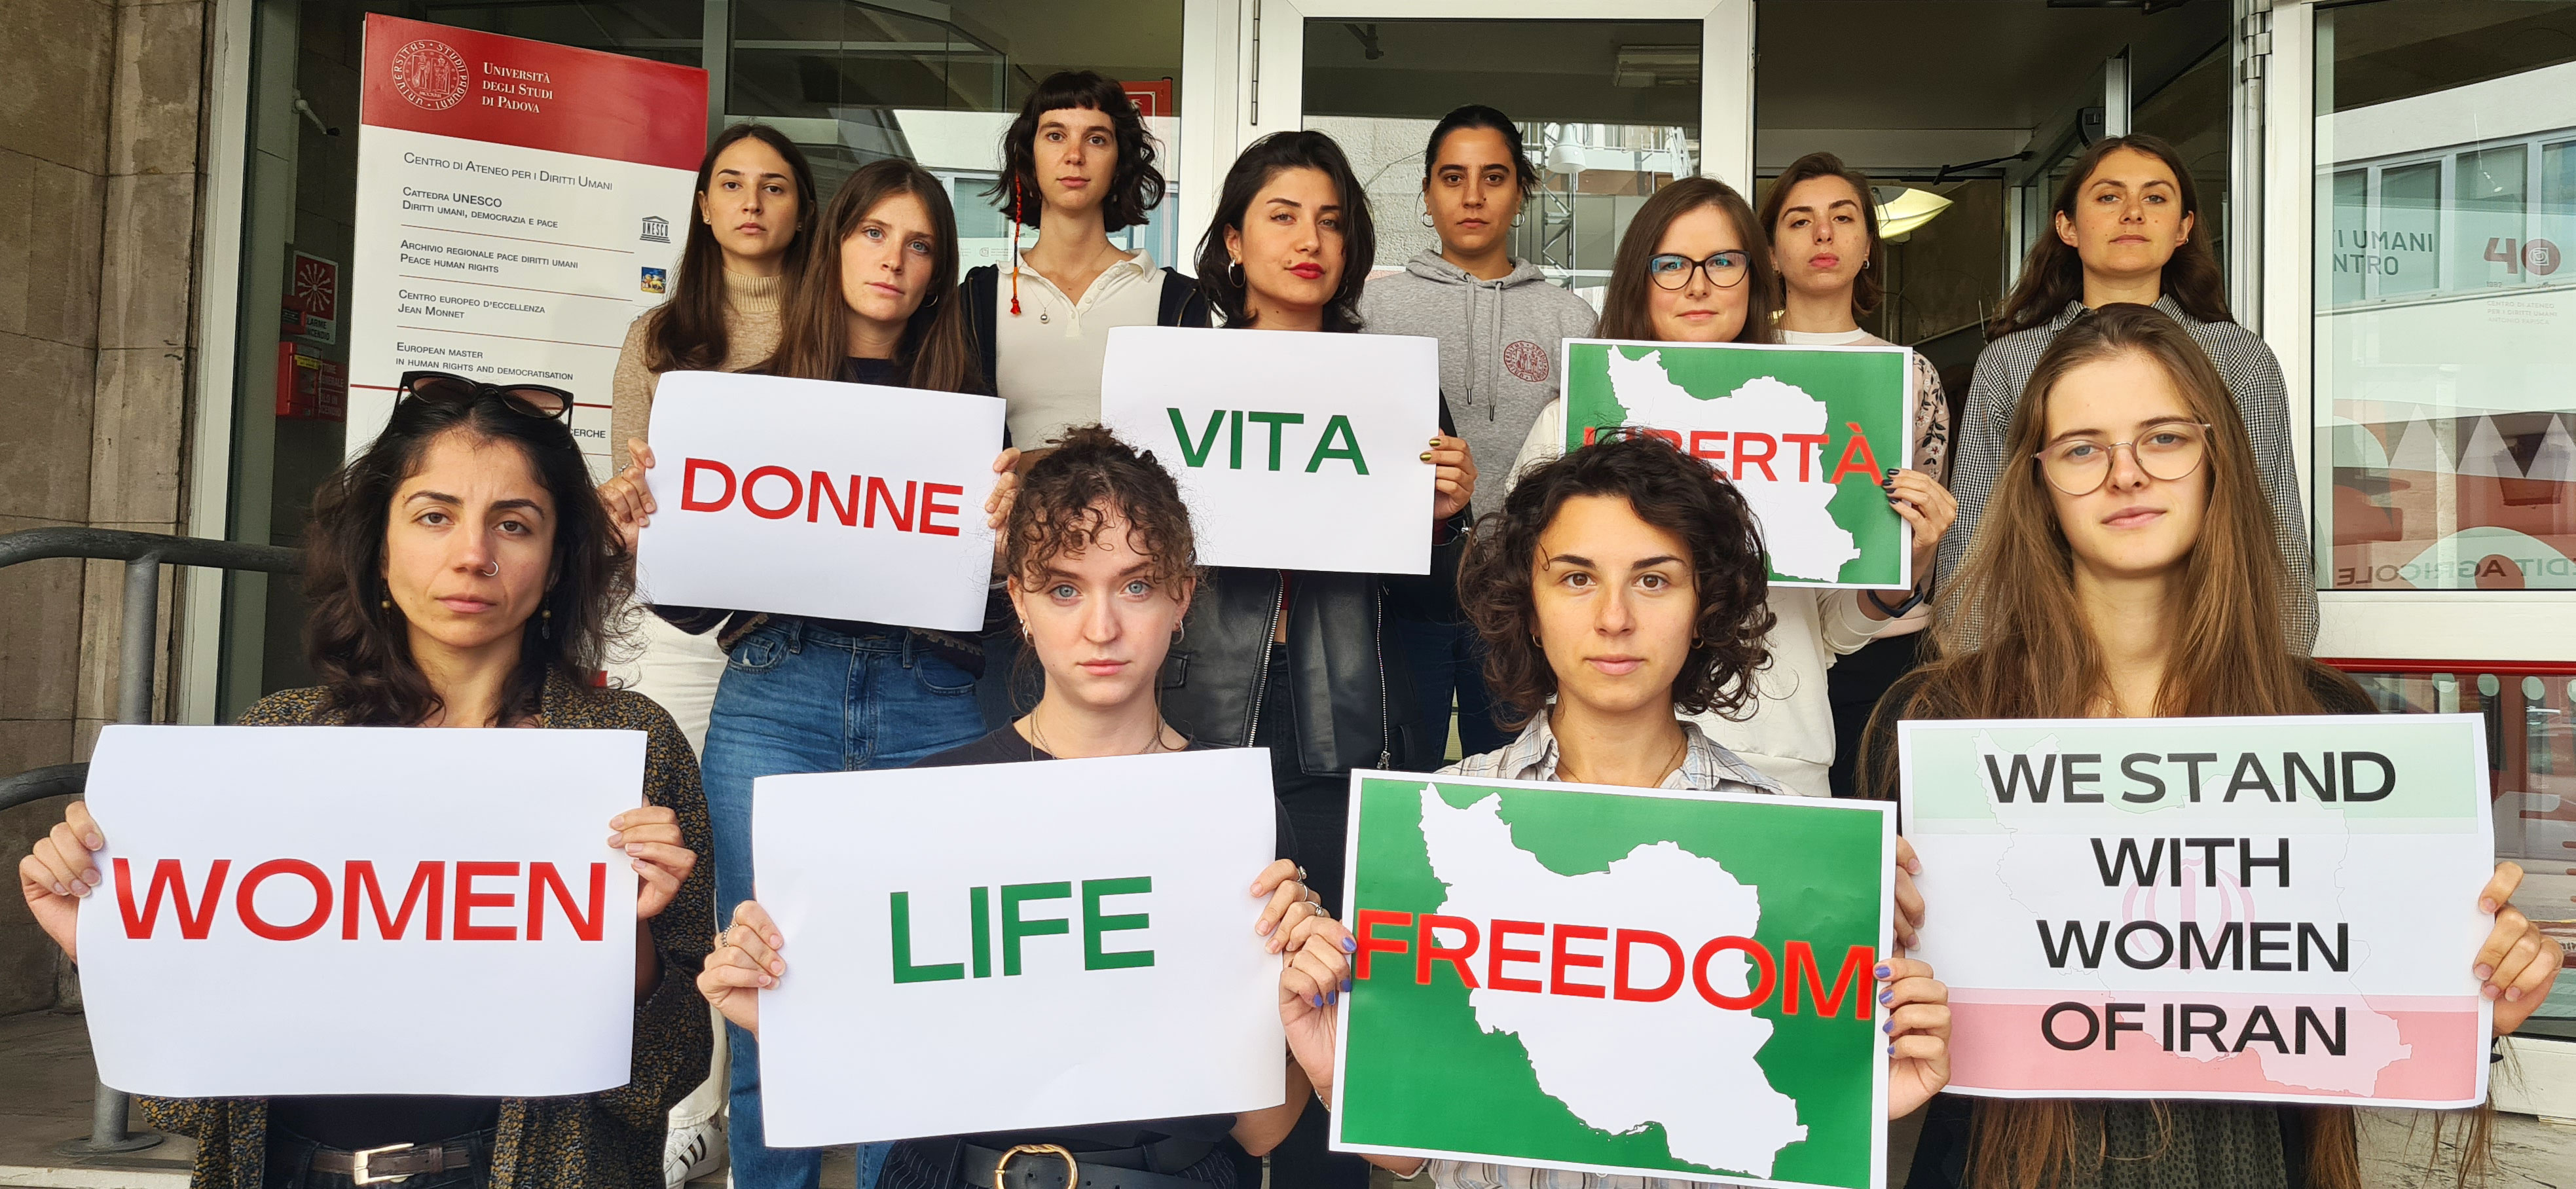 Le studentesse del Corso di laurea in Human Rights and Multi-level Governance dell'Università di Padova in solidarietà con le donne e gli uomini iraniani che chiedono con coraggio libertà, rispetto della vita e dei diritti umani.

#vitadonnelibertà #Iran #MashaAmini #WomenLifeFreedom #IStandwithWomenofIran